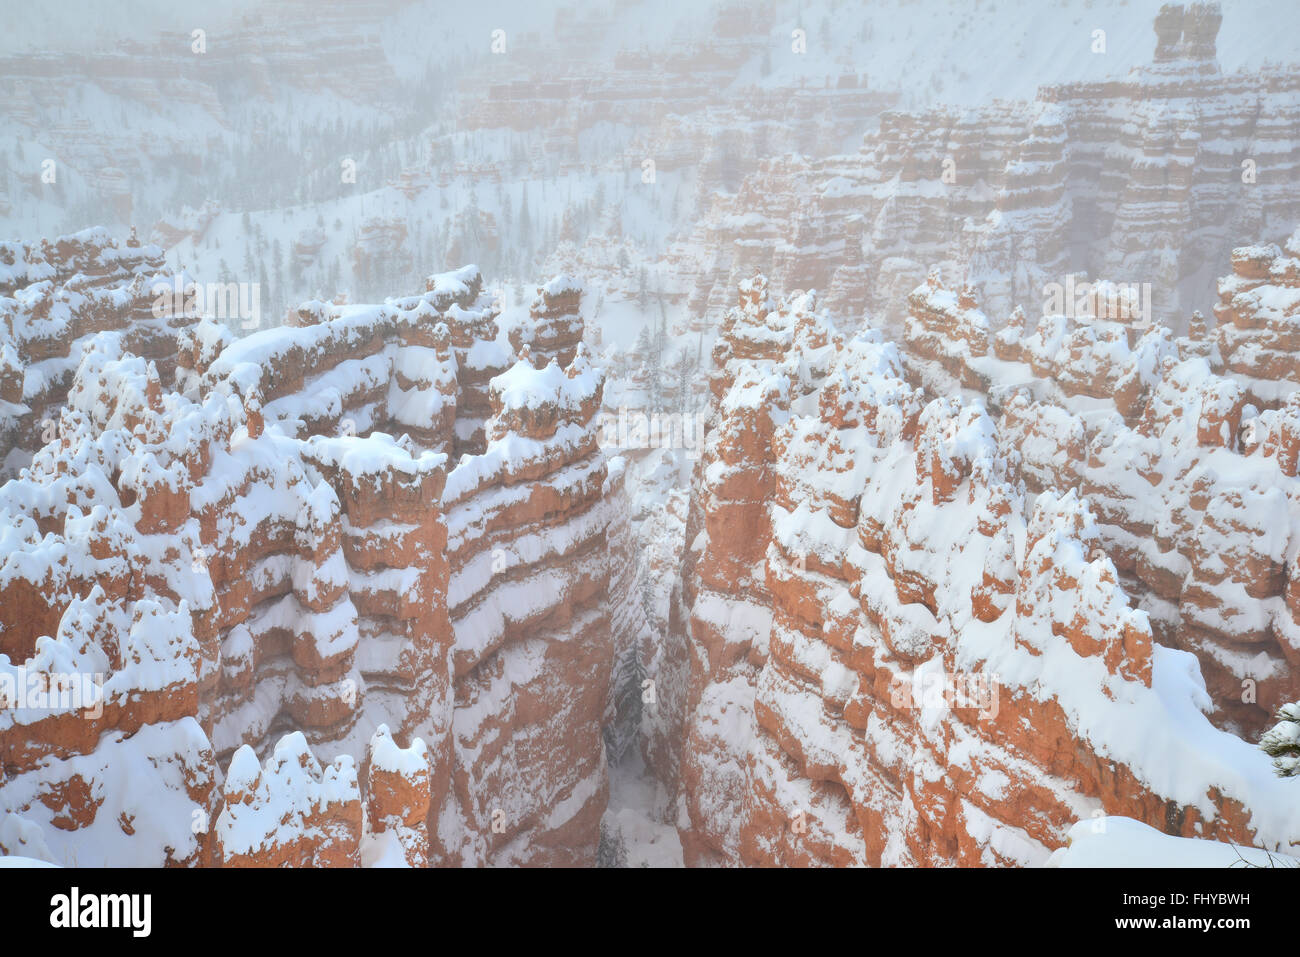 La ville silencieuse de Bryce Canyon National Park après une tempête de neige vu de la Rim Trail près de Sunset Point. Bryce est en soi de l'Utah. Banque D'Images